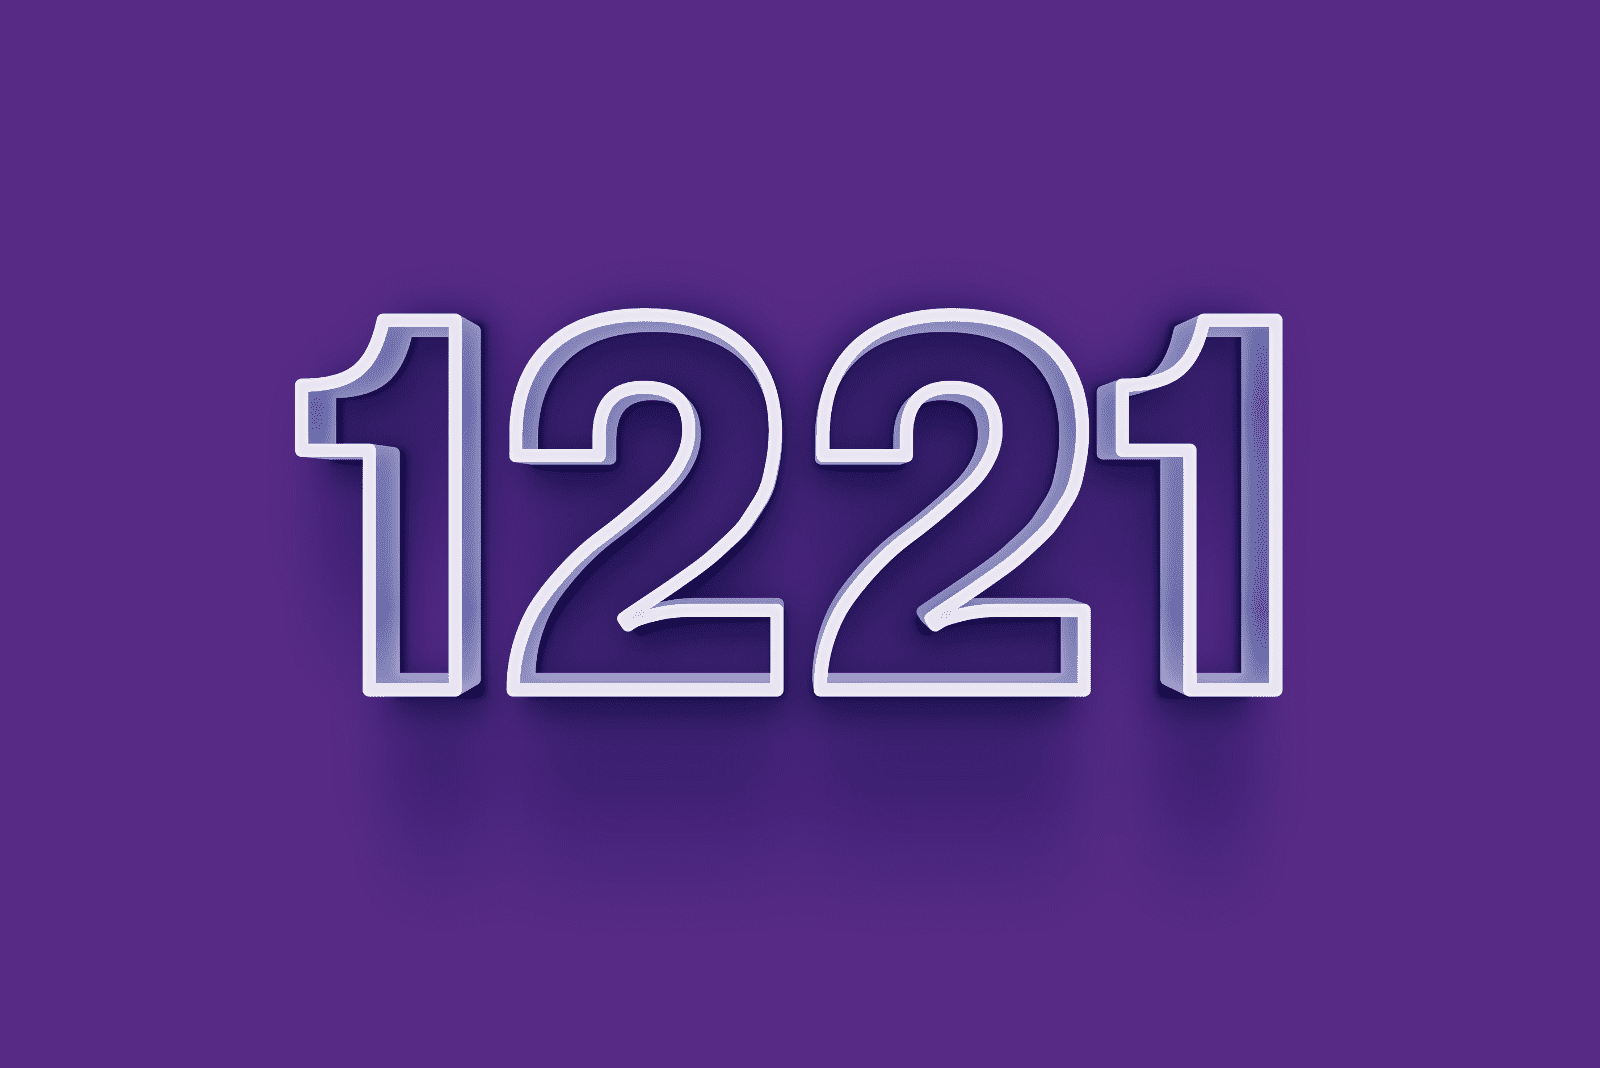 1221 sur fond violet